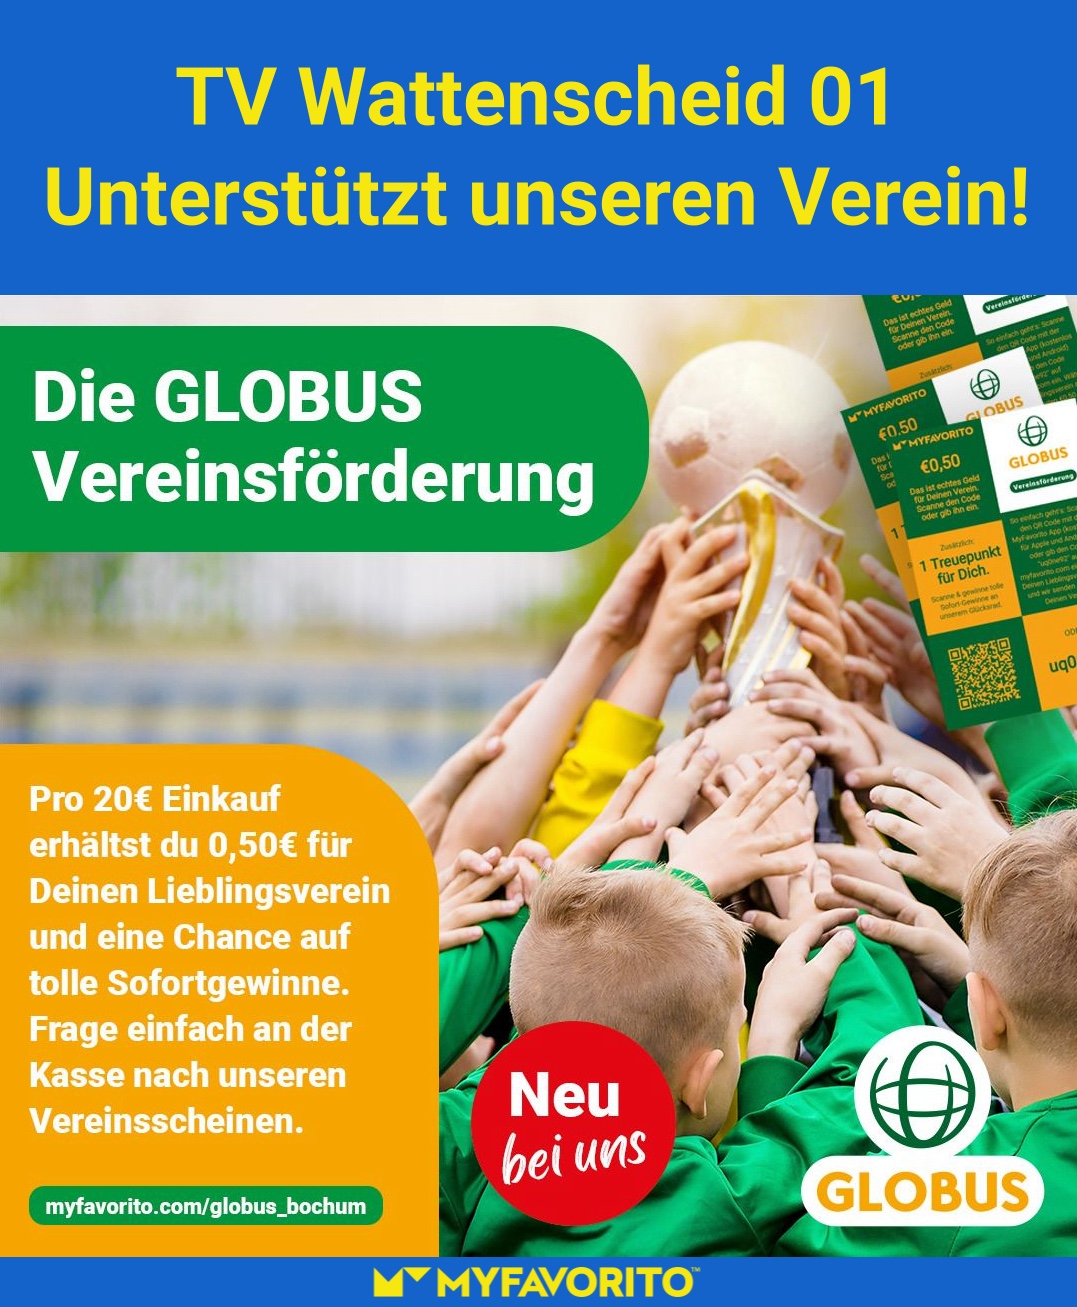 GLOBUS Bochum als Vereinssponsor